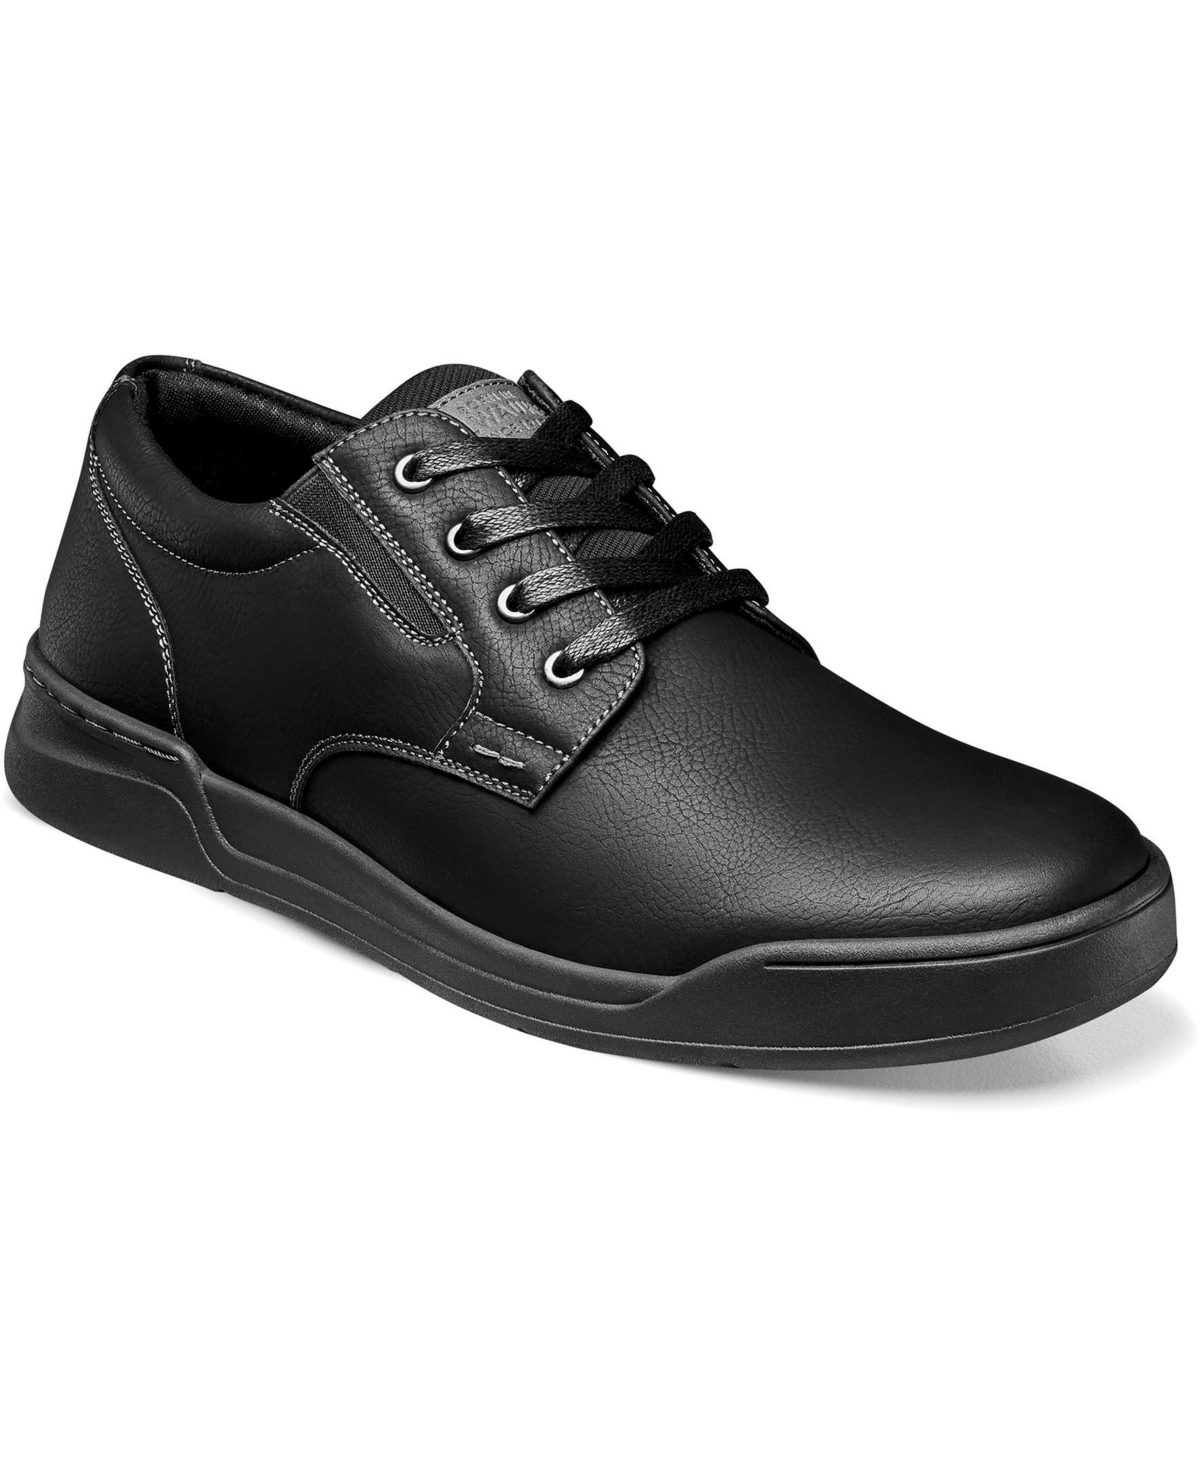 Men's Tour Work Slip Resistant Plain Toe Lace Up Oxford Shoes - Black